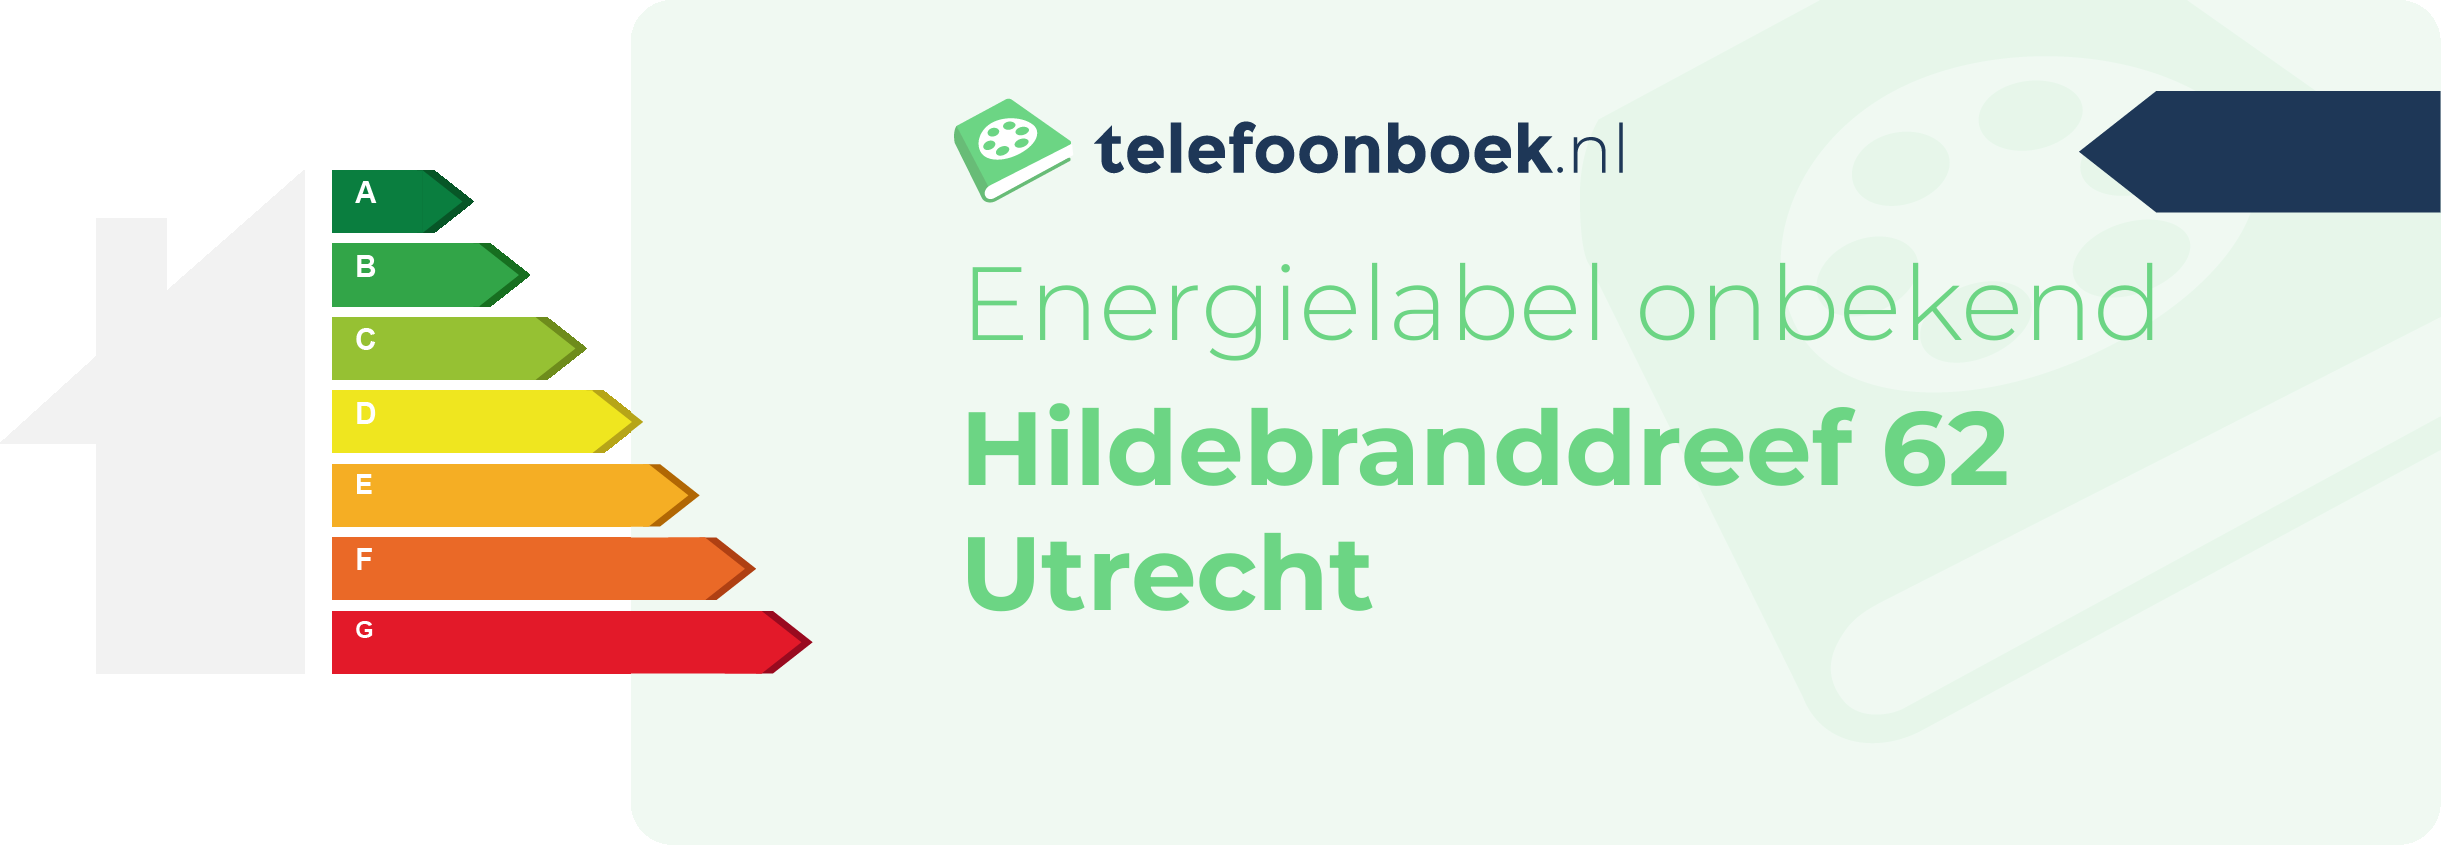 Energielabel Hildebranddreef 62 Utrecht